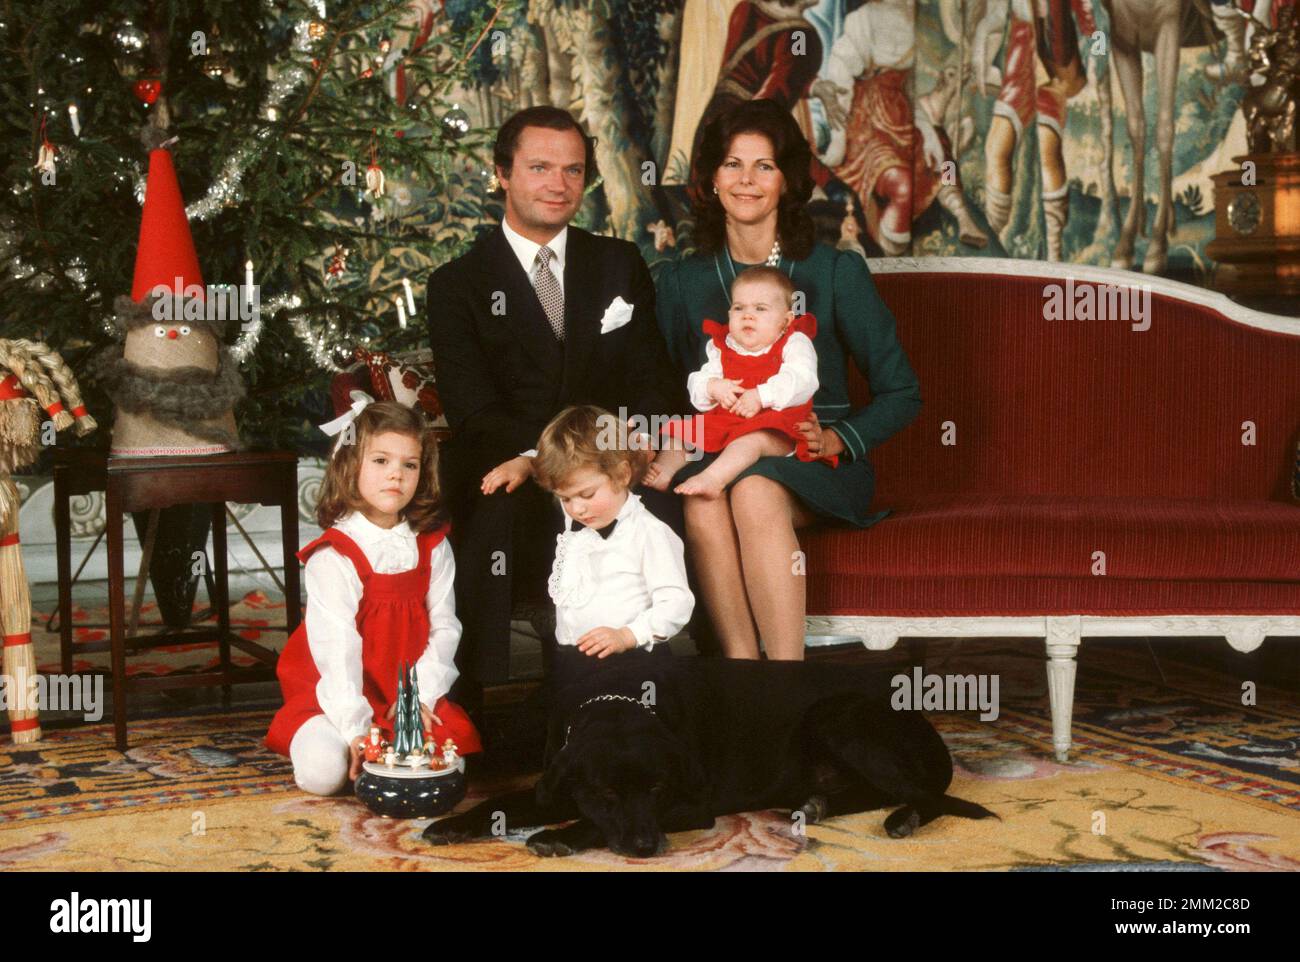 Carl XVI Gustaf, re di Svezia. Nato il 30 aprile 1946. Nella foto con la regina Silvia e i loro figli incoronano la principessa Victoria, il principe Carl Philip e la principessa Madeleine nel dicembre 1982. Foto Stock